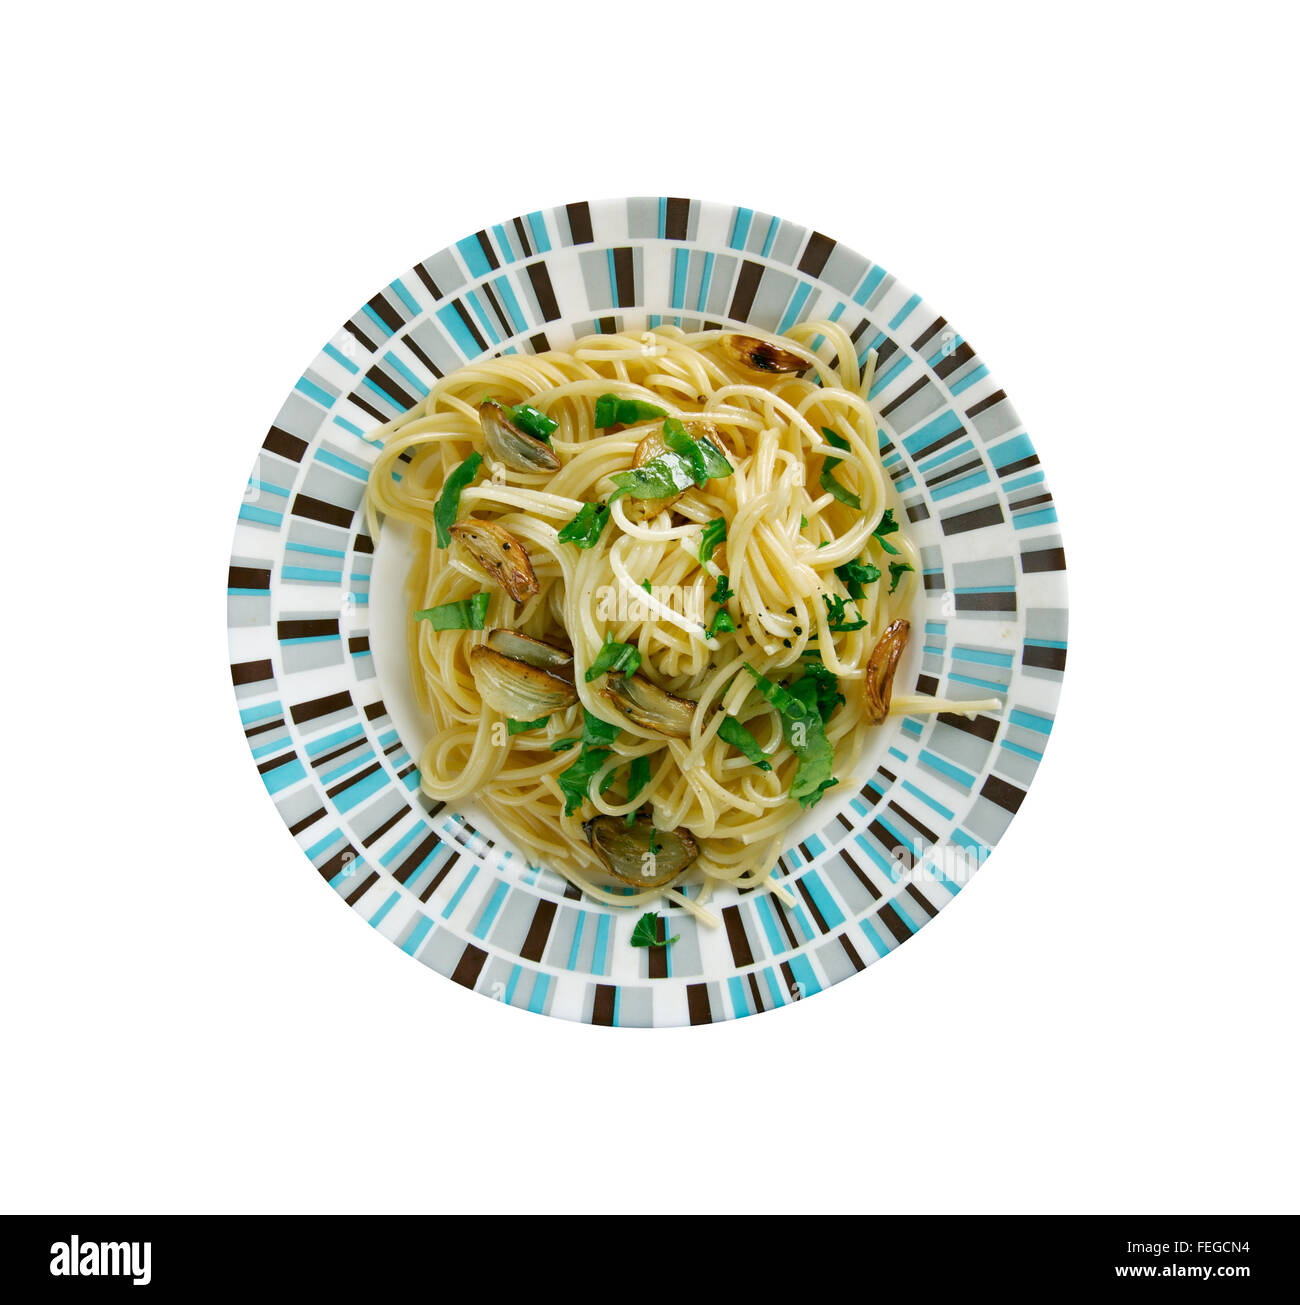 Spaghetti aglio e olio -  spaghetti with garlic and oil.traditional Italian pasta dish, coming from Napoli Stock Photo